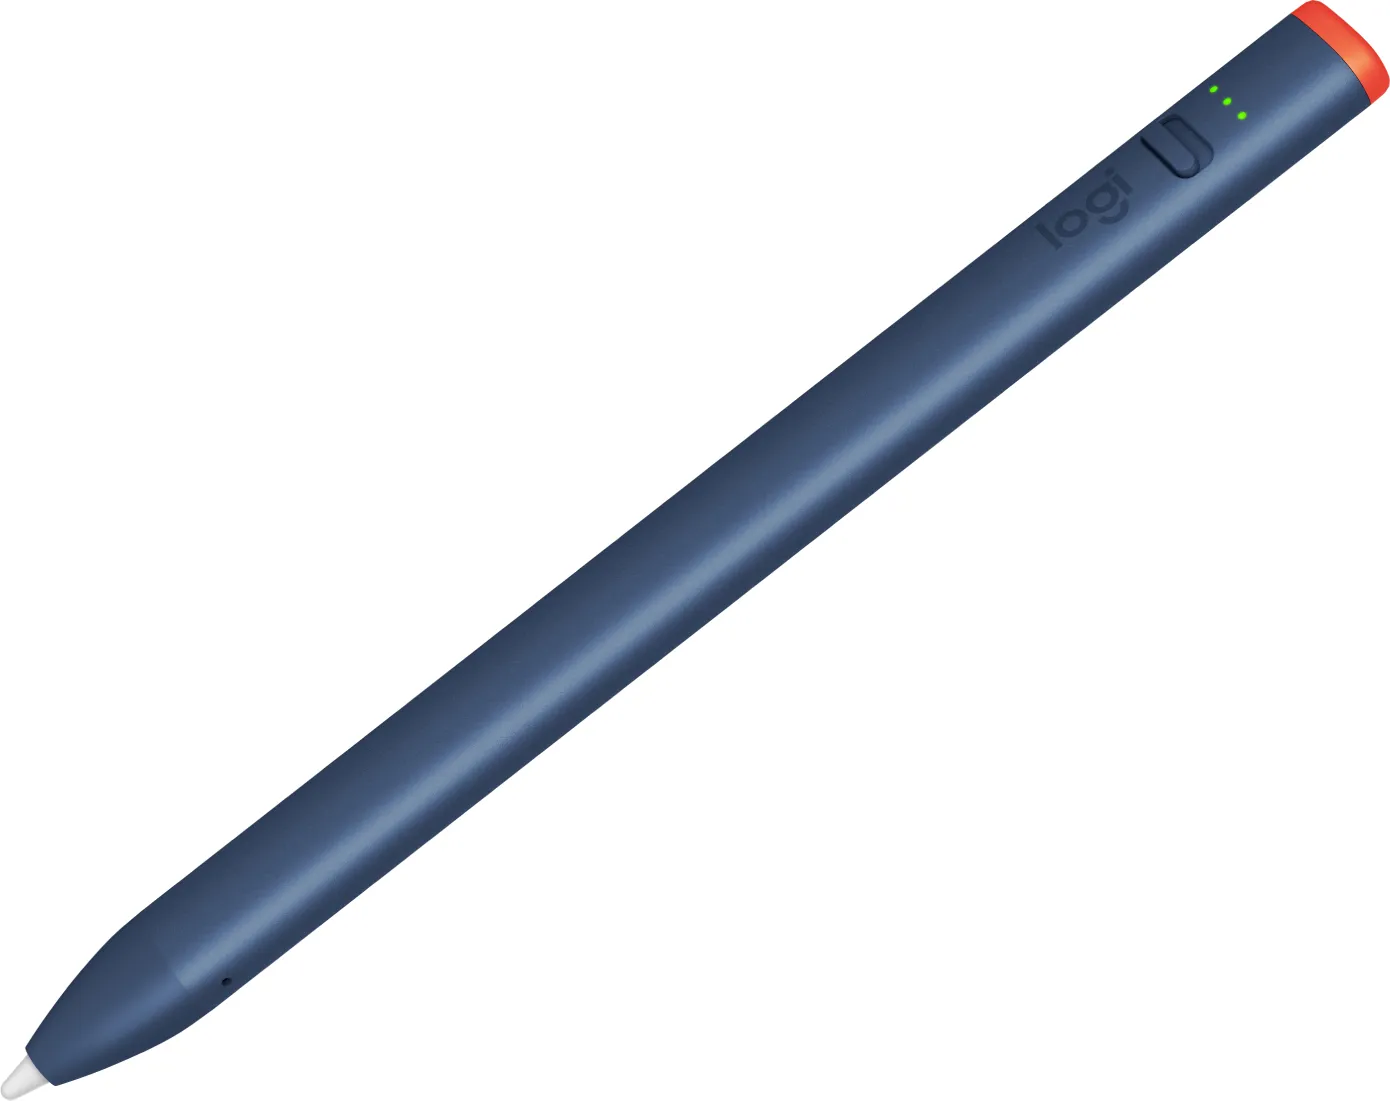 Vente LOGITECH Crayon for Education Digital pen wireless Logitech au meilleur prix - visuel 2